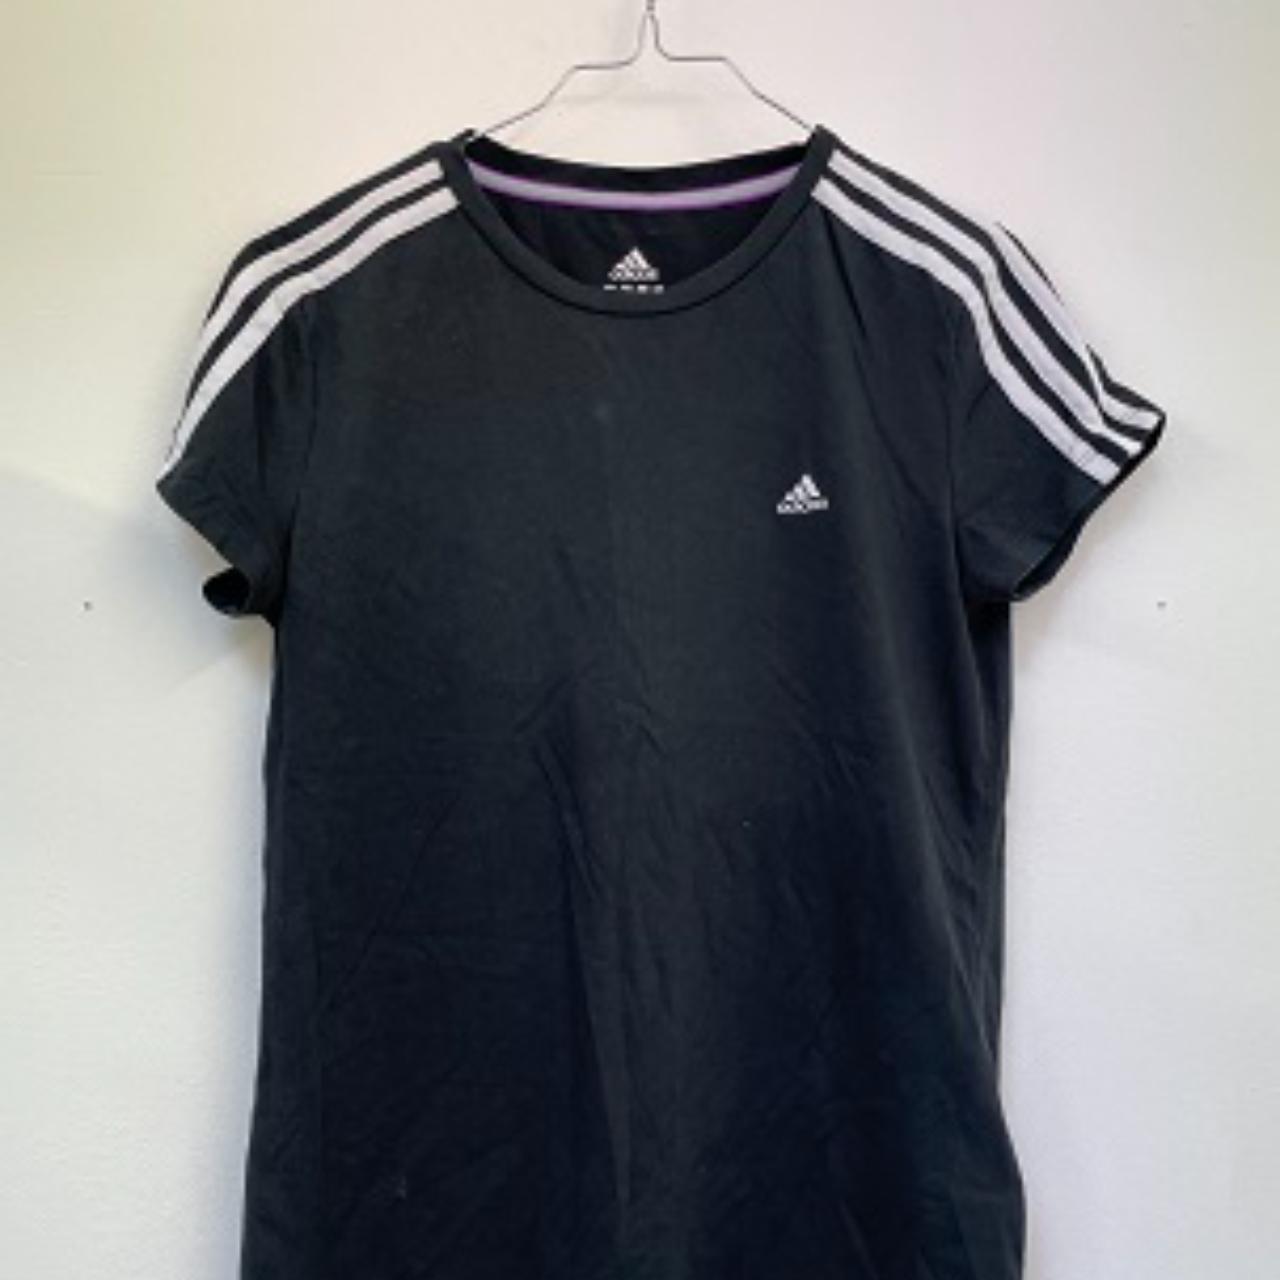 Vintage Adidas 3-stripes tee black/white tshirt